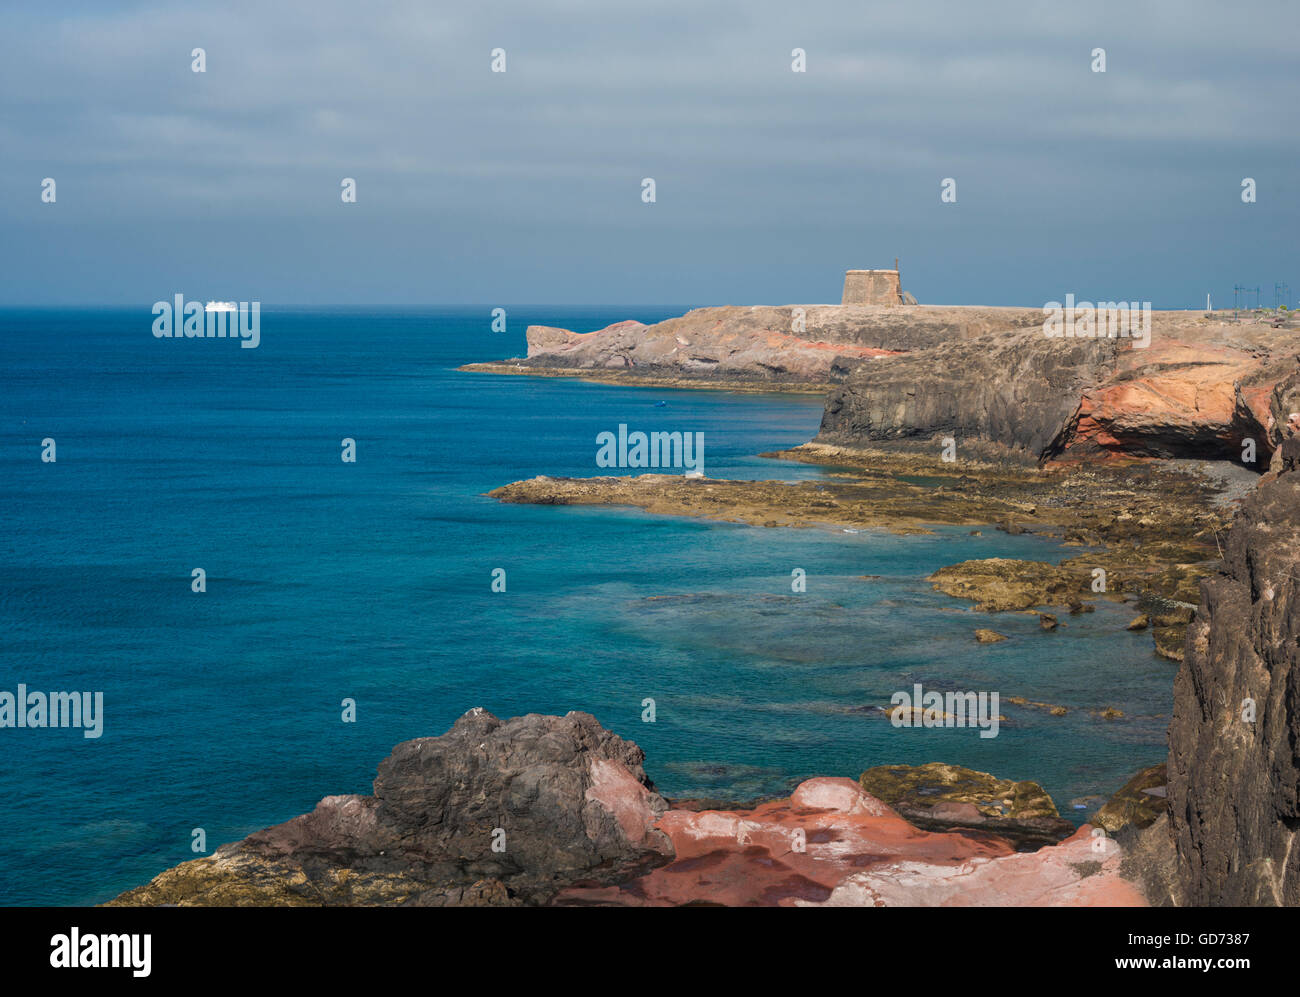 Vista lungo la costa dalle scogliere a est di Playa Blanca, Lanzarote, con il traghetto per Fuerteventura in distanza Foto Stock